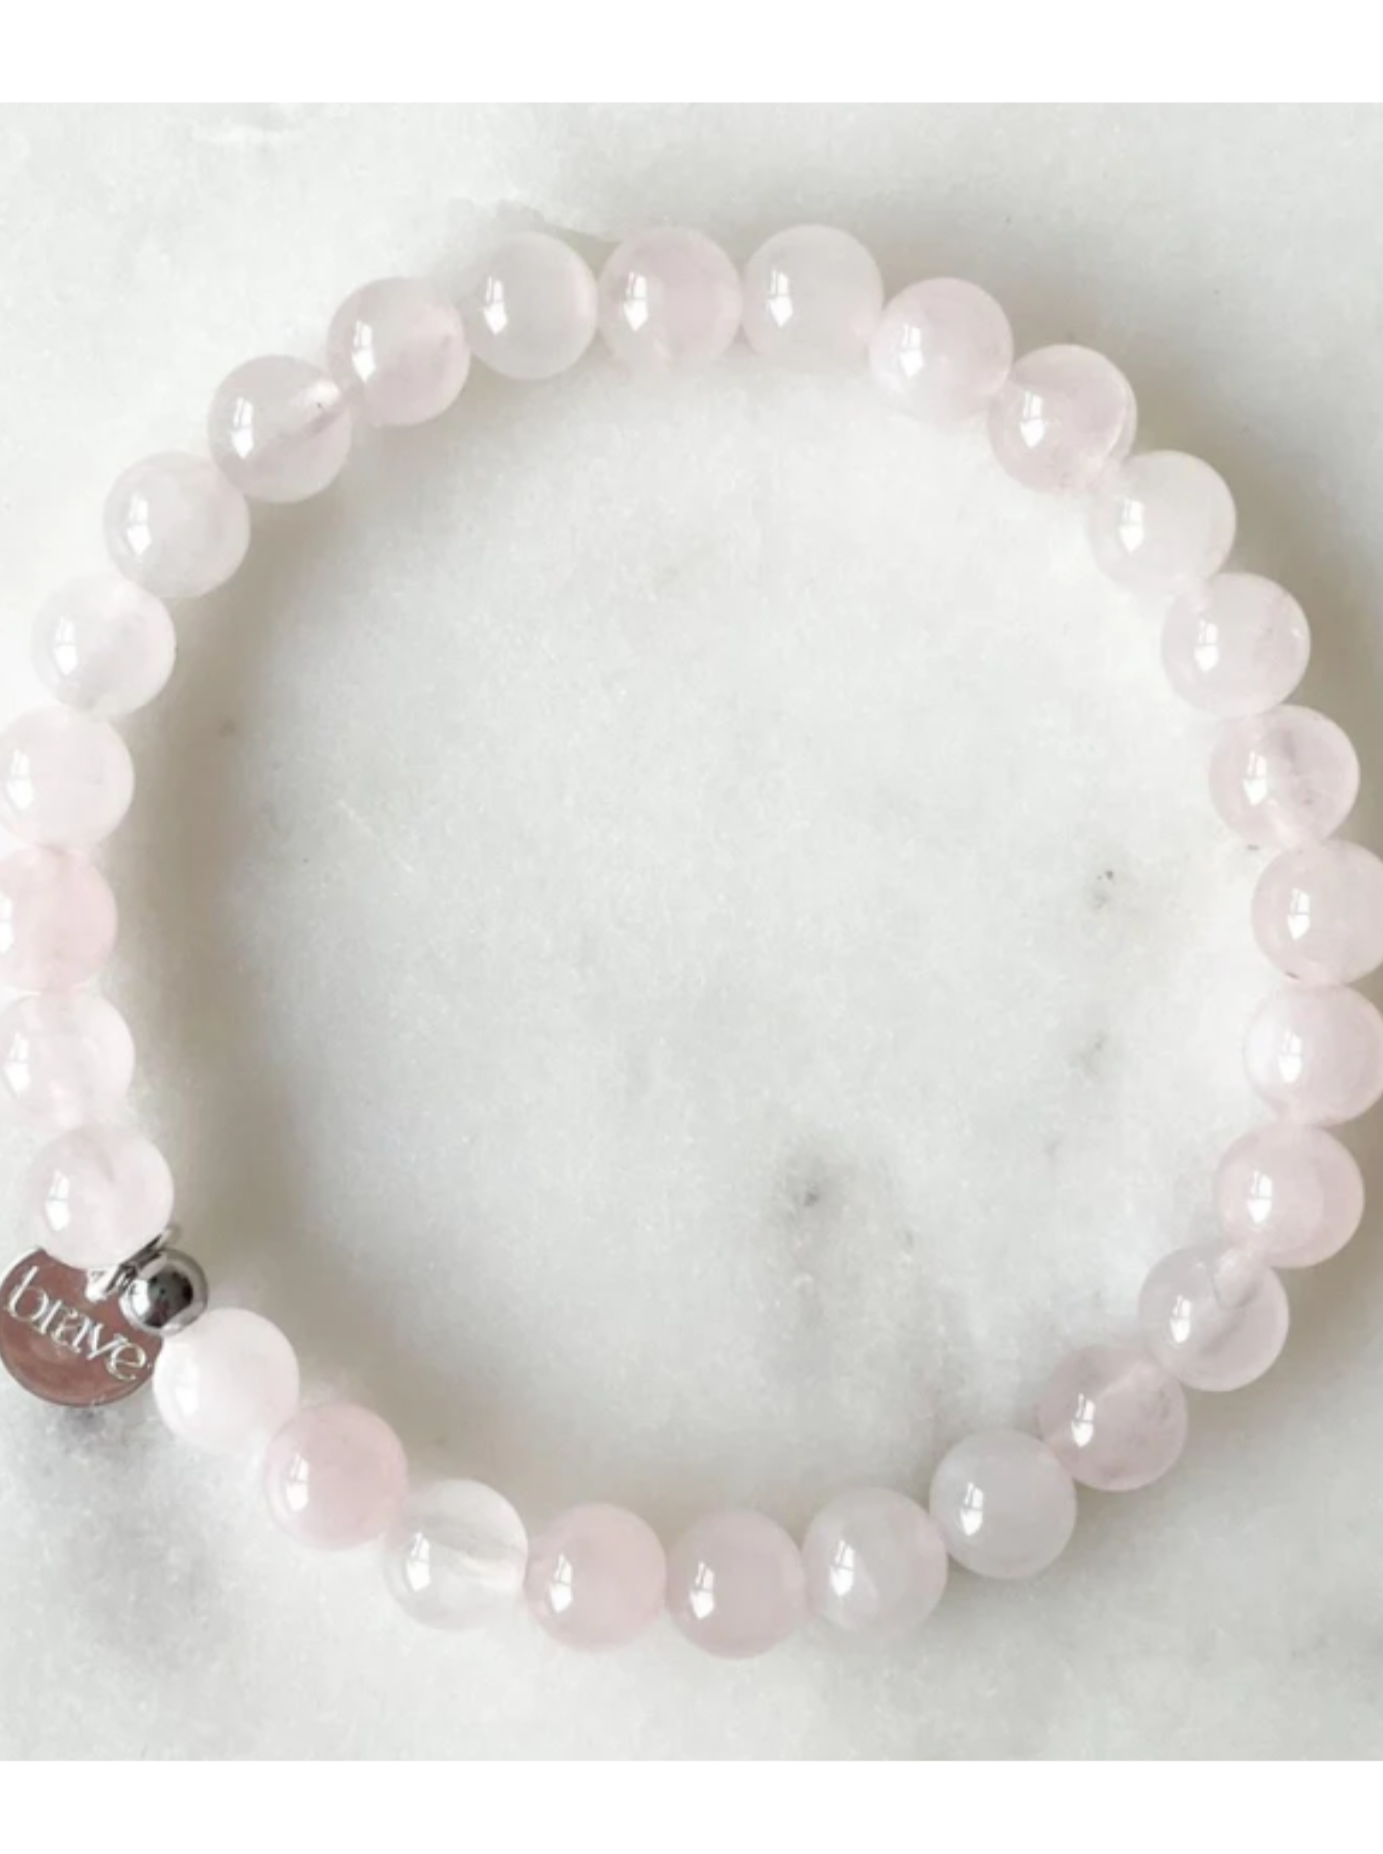 Adults Love - Brave Bracelet in Rose Quartz